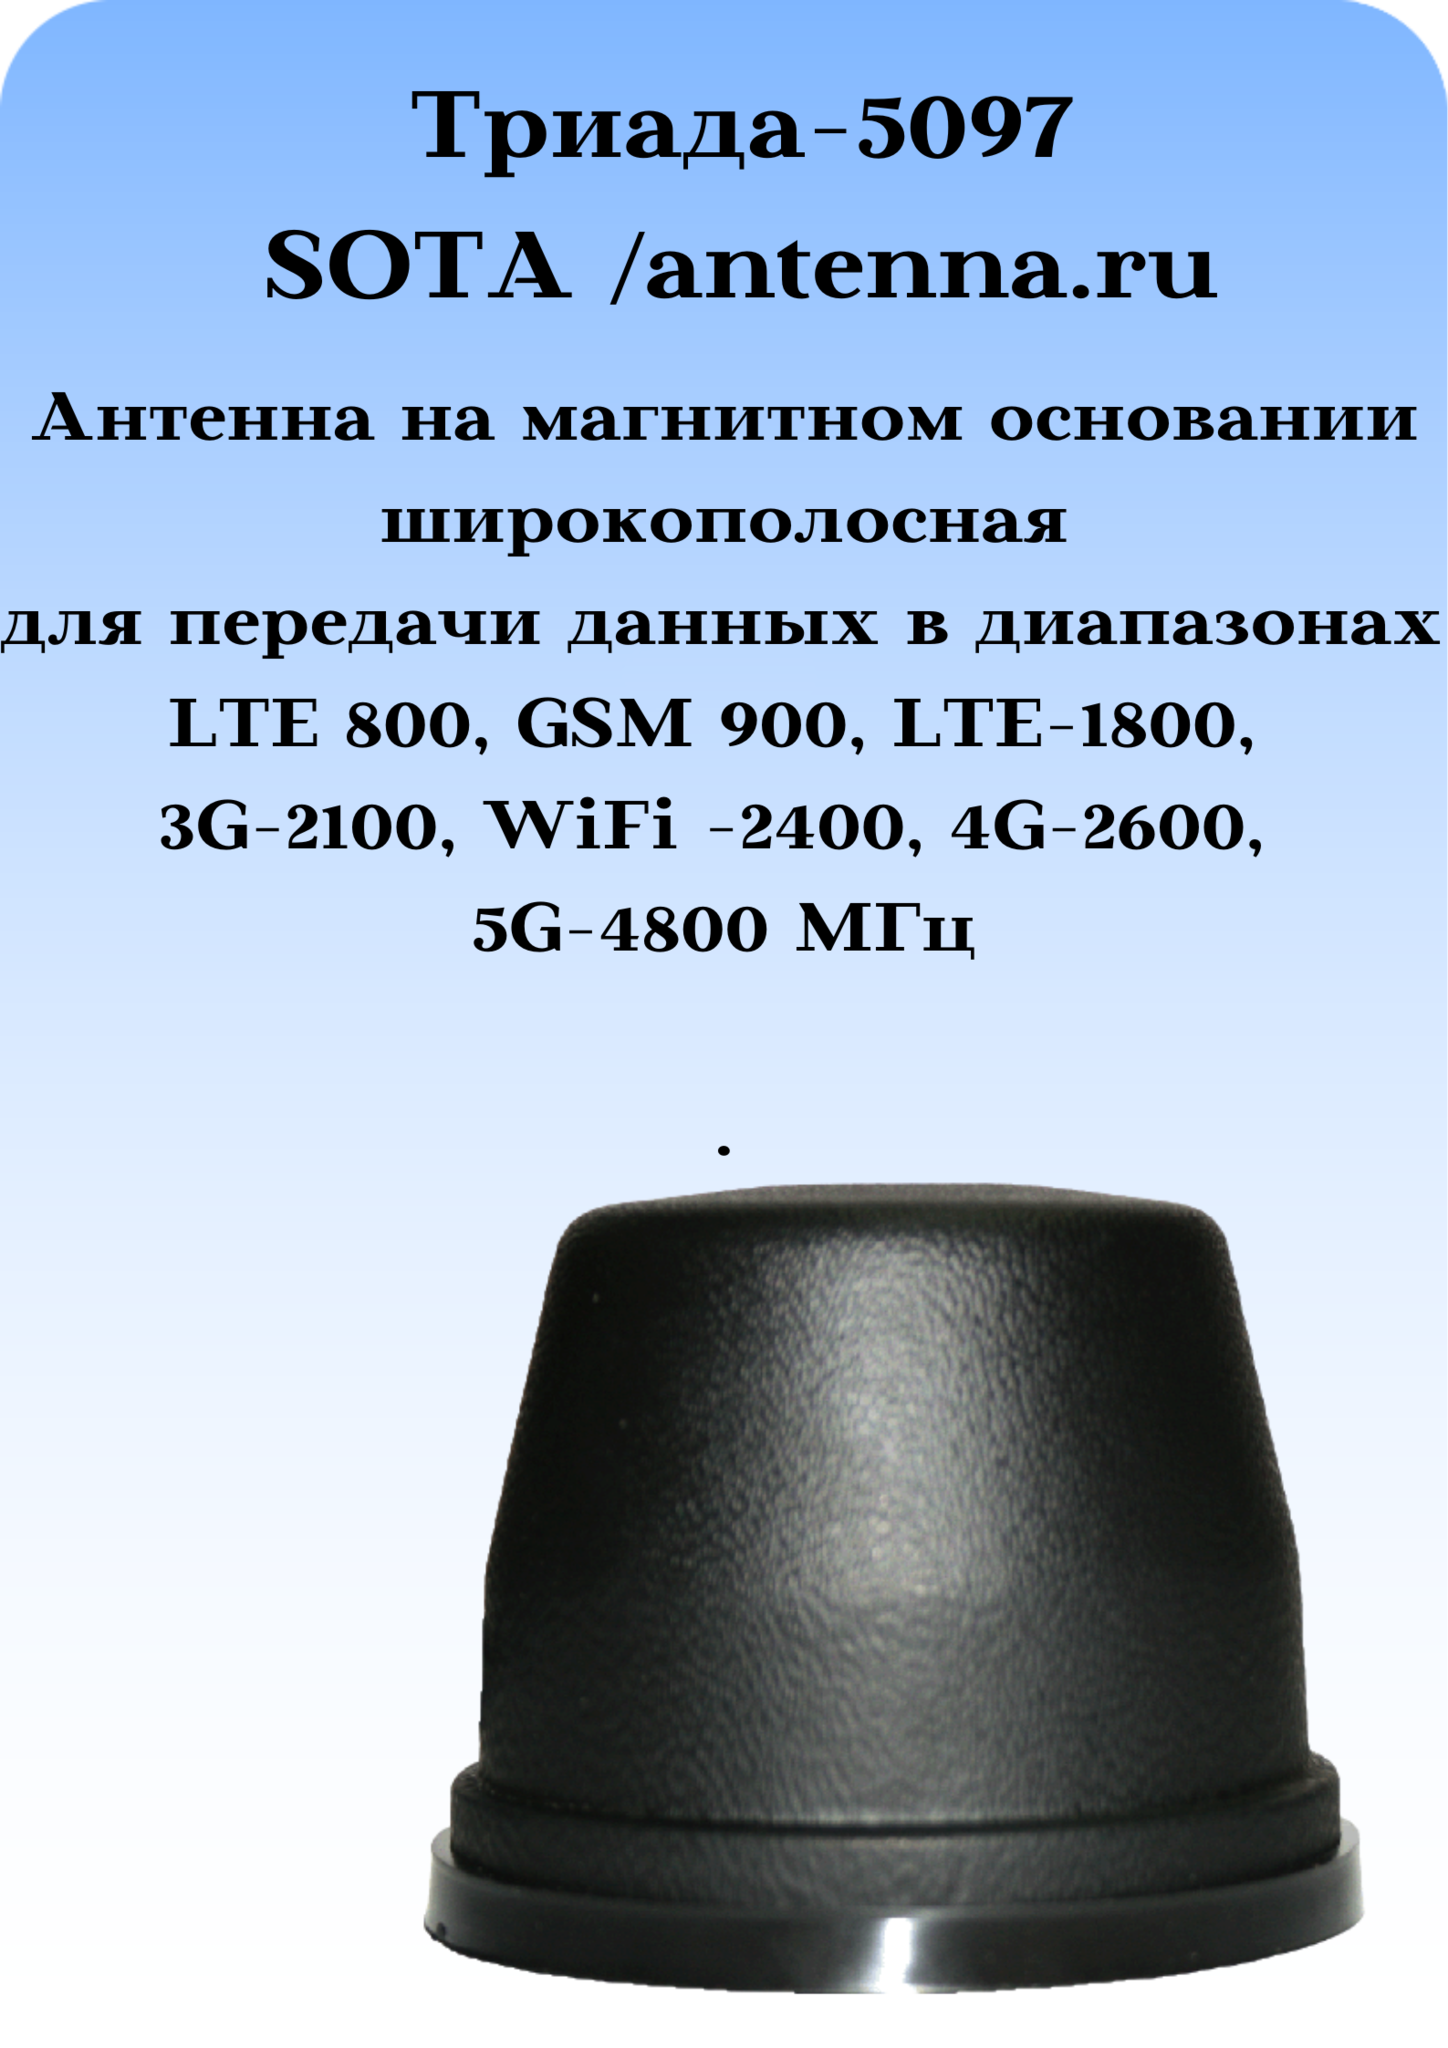 Антенна на магните Триада-5097 всенаправленная LTE-800, GSM-900, LTE-1800, 3G-2100, WiFi-2400, 4G-2600, 5G-4800MГц